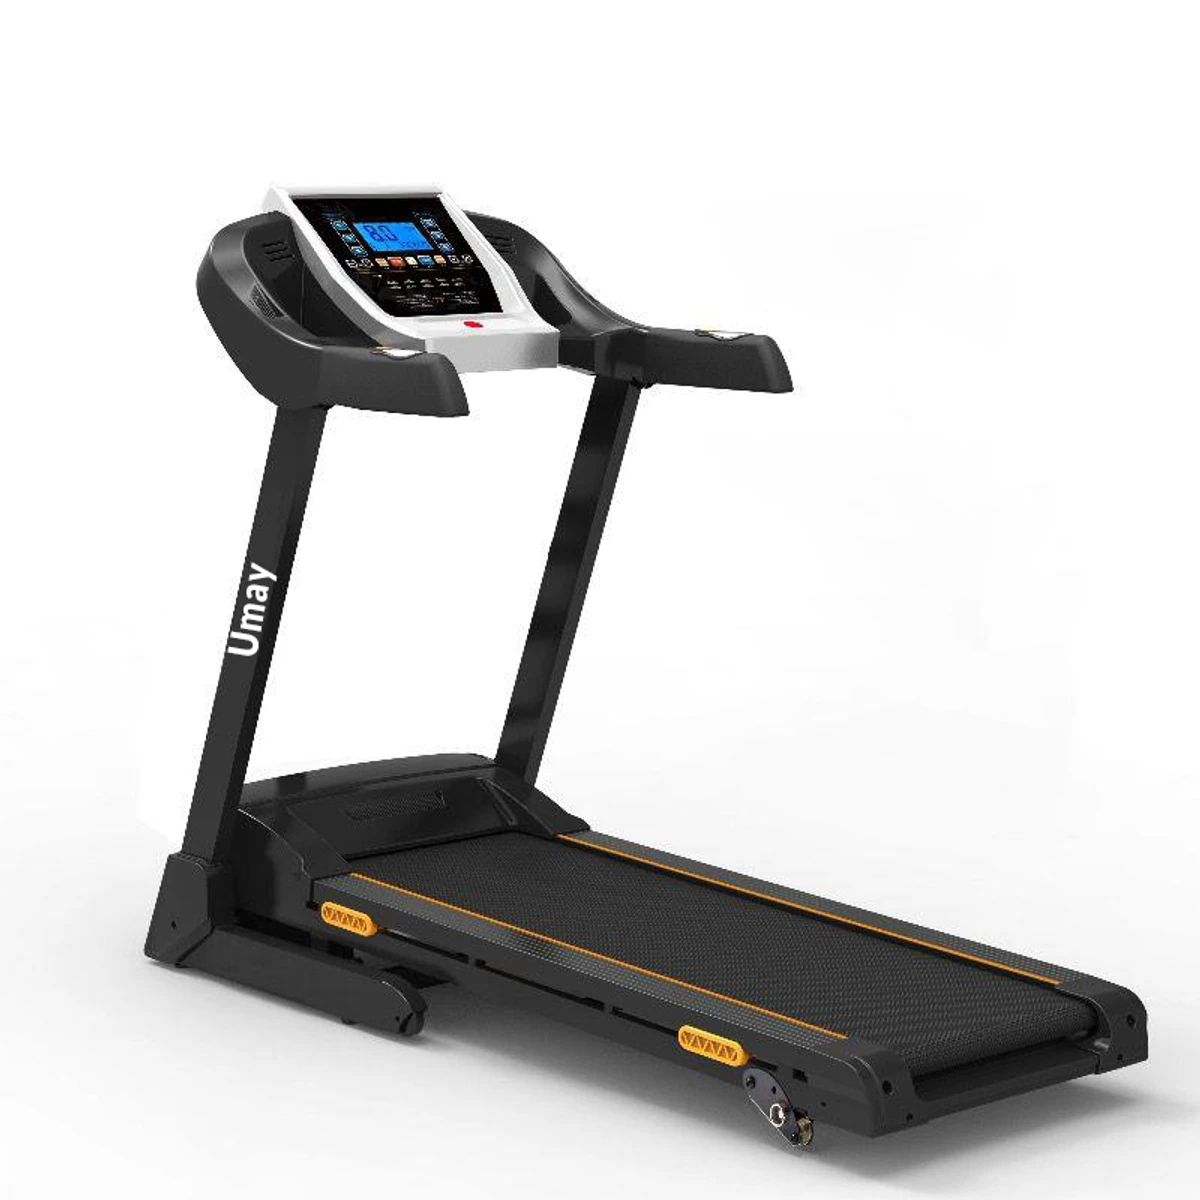 Umay T800MS foldable motorized treadmill